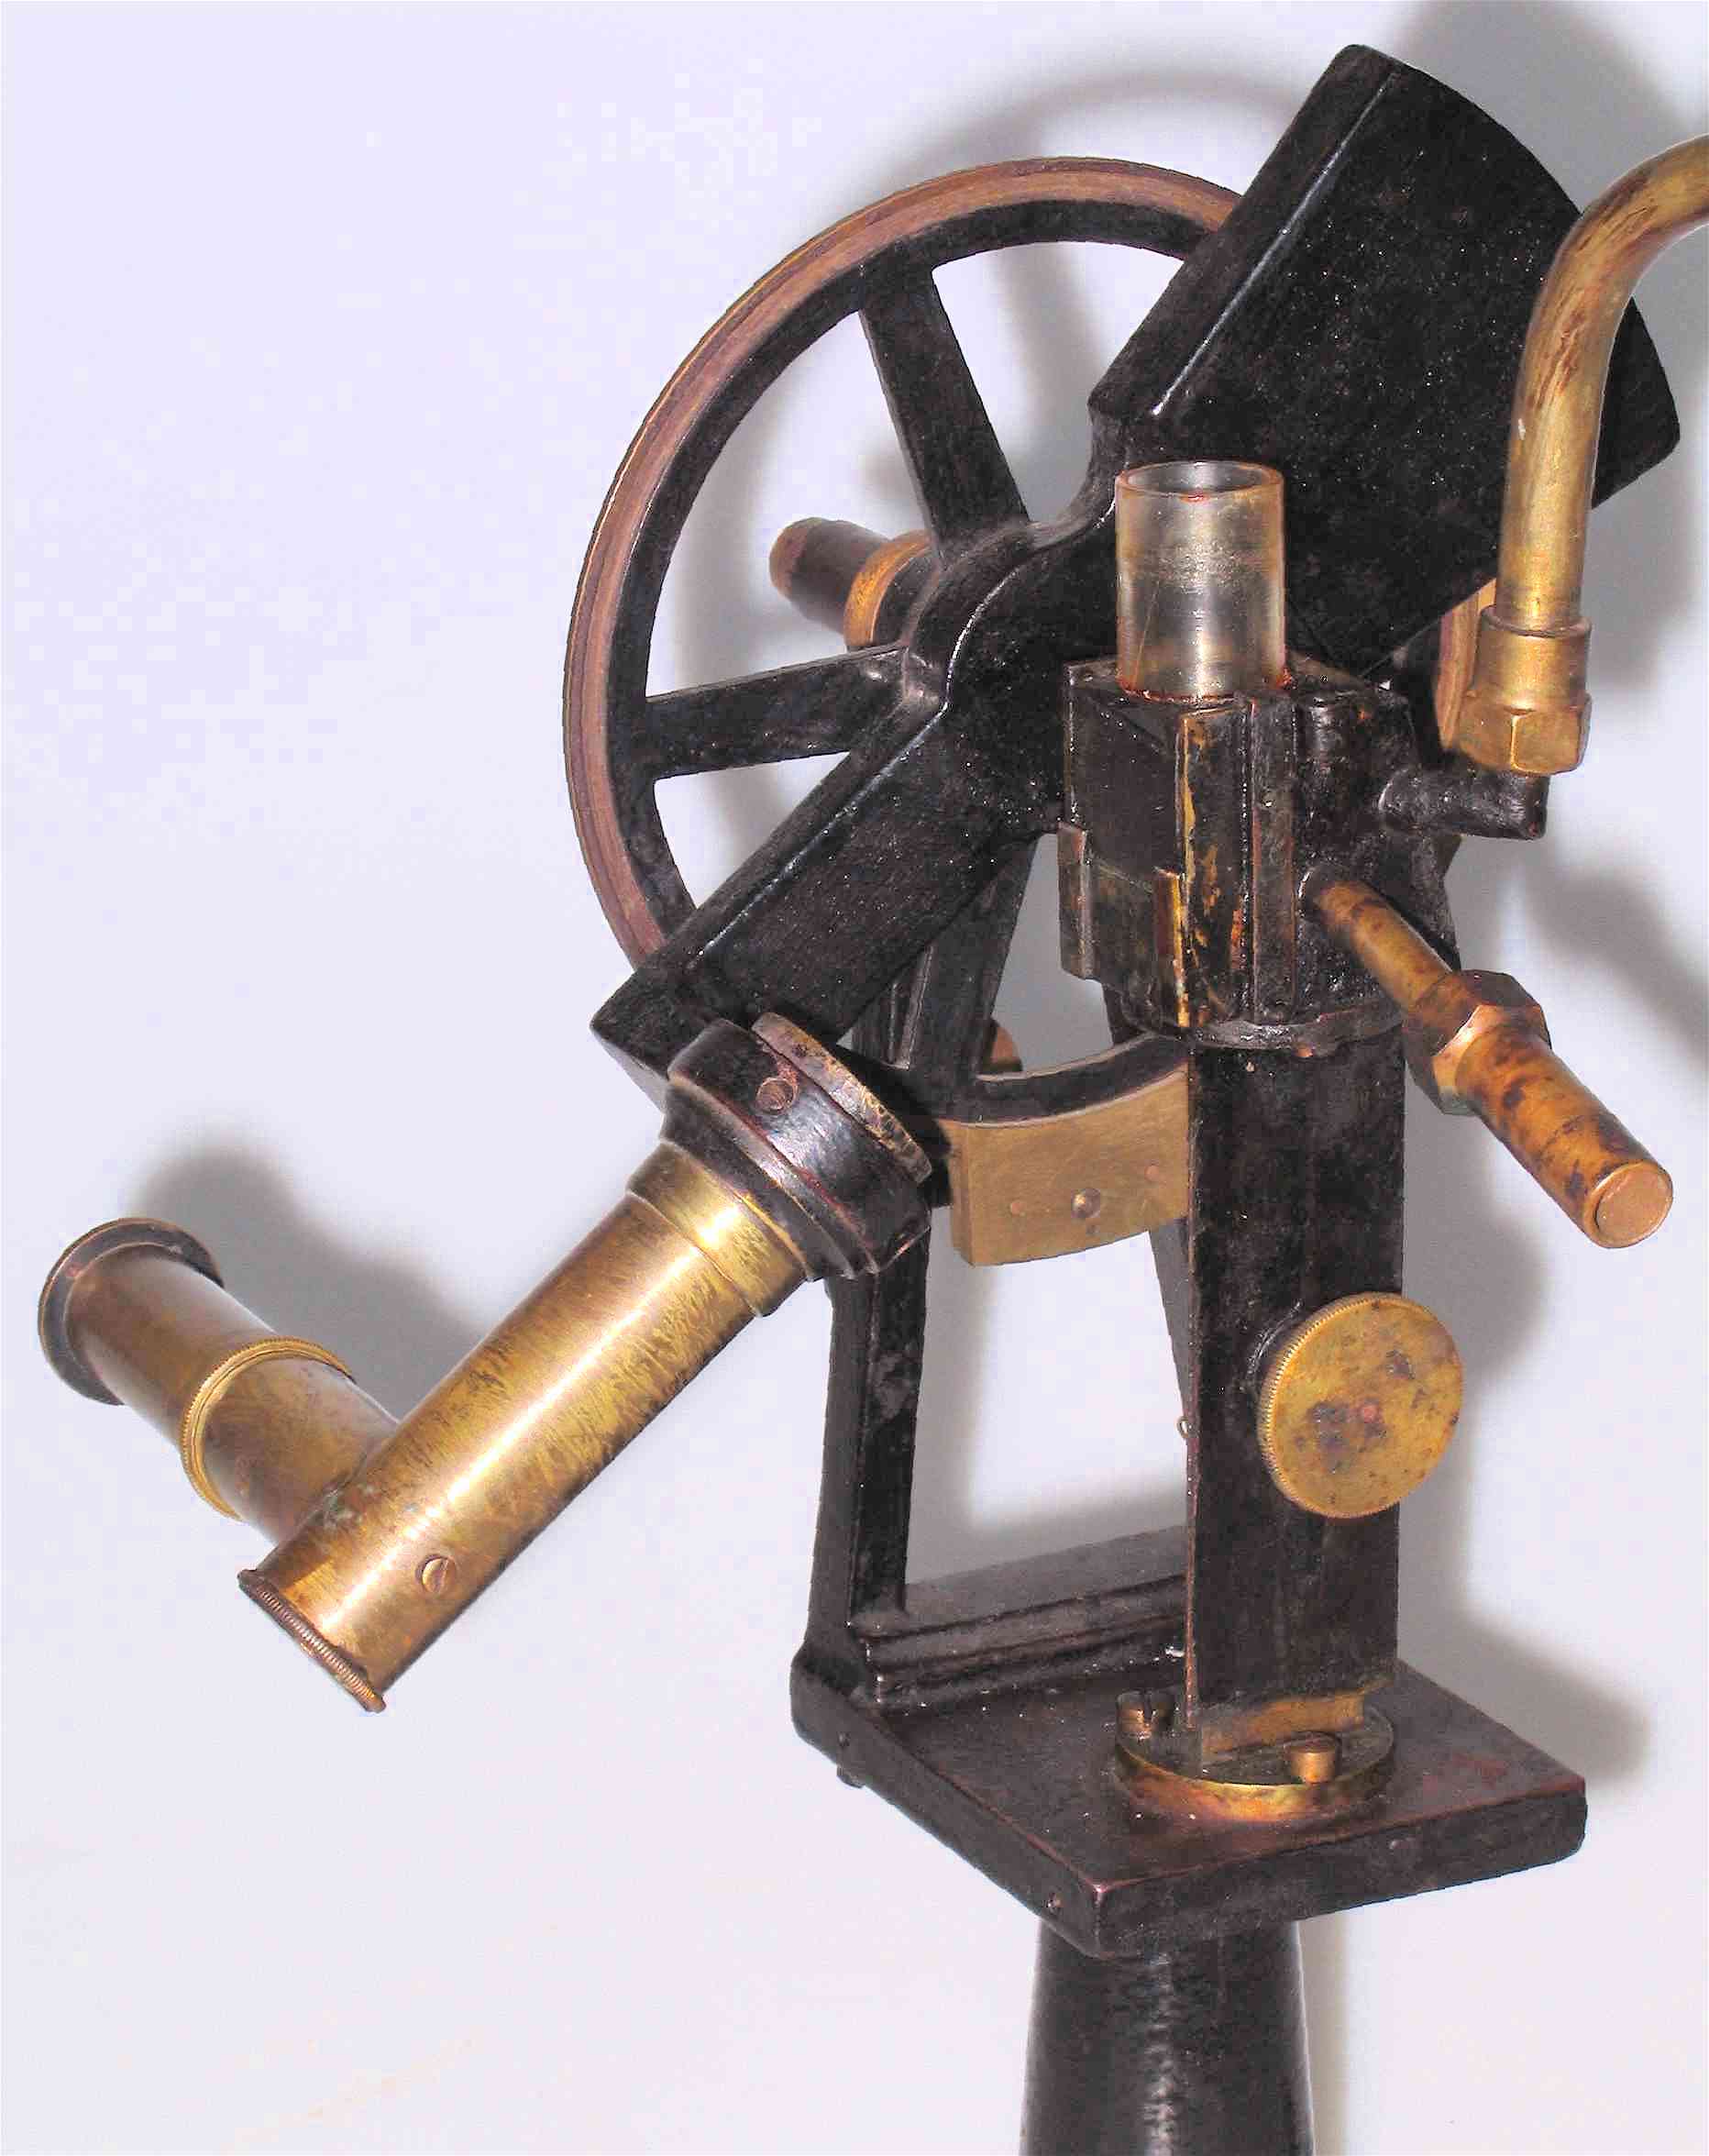 Réfractomètre de Pulfrich
(modèle original)